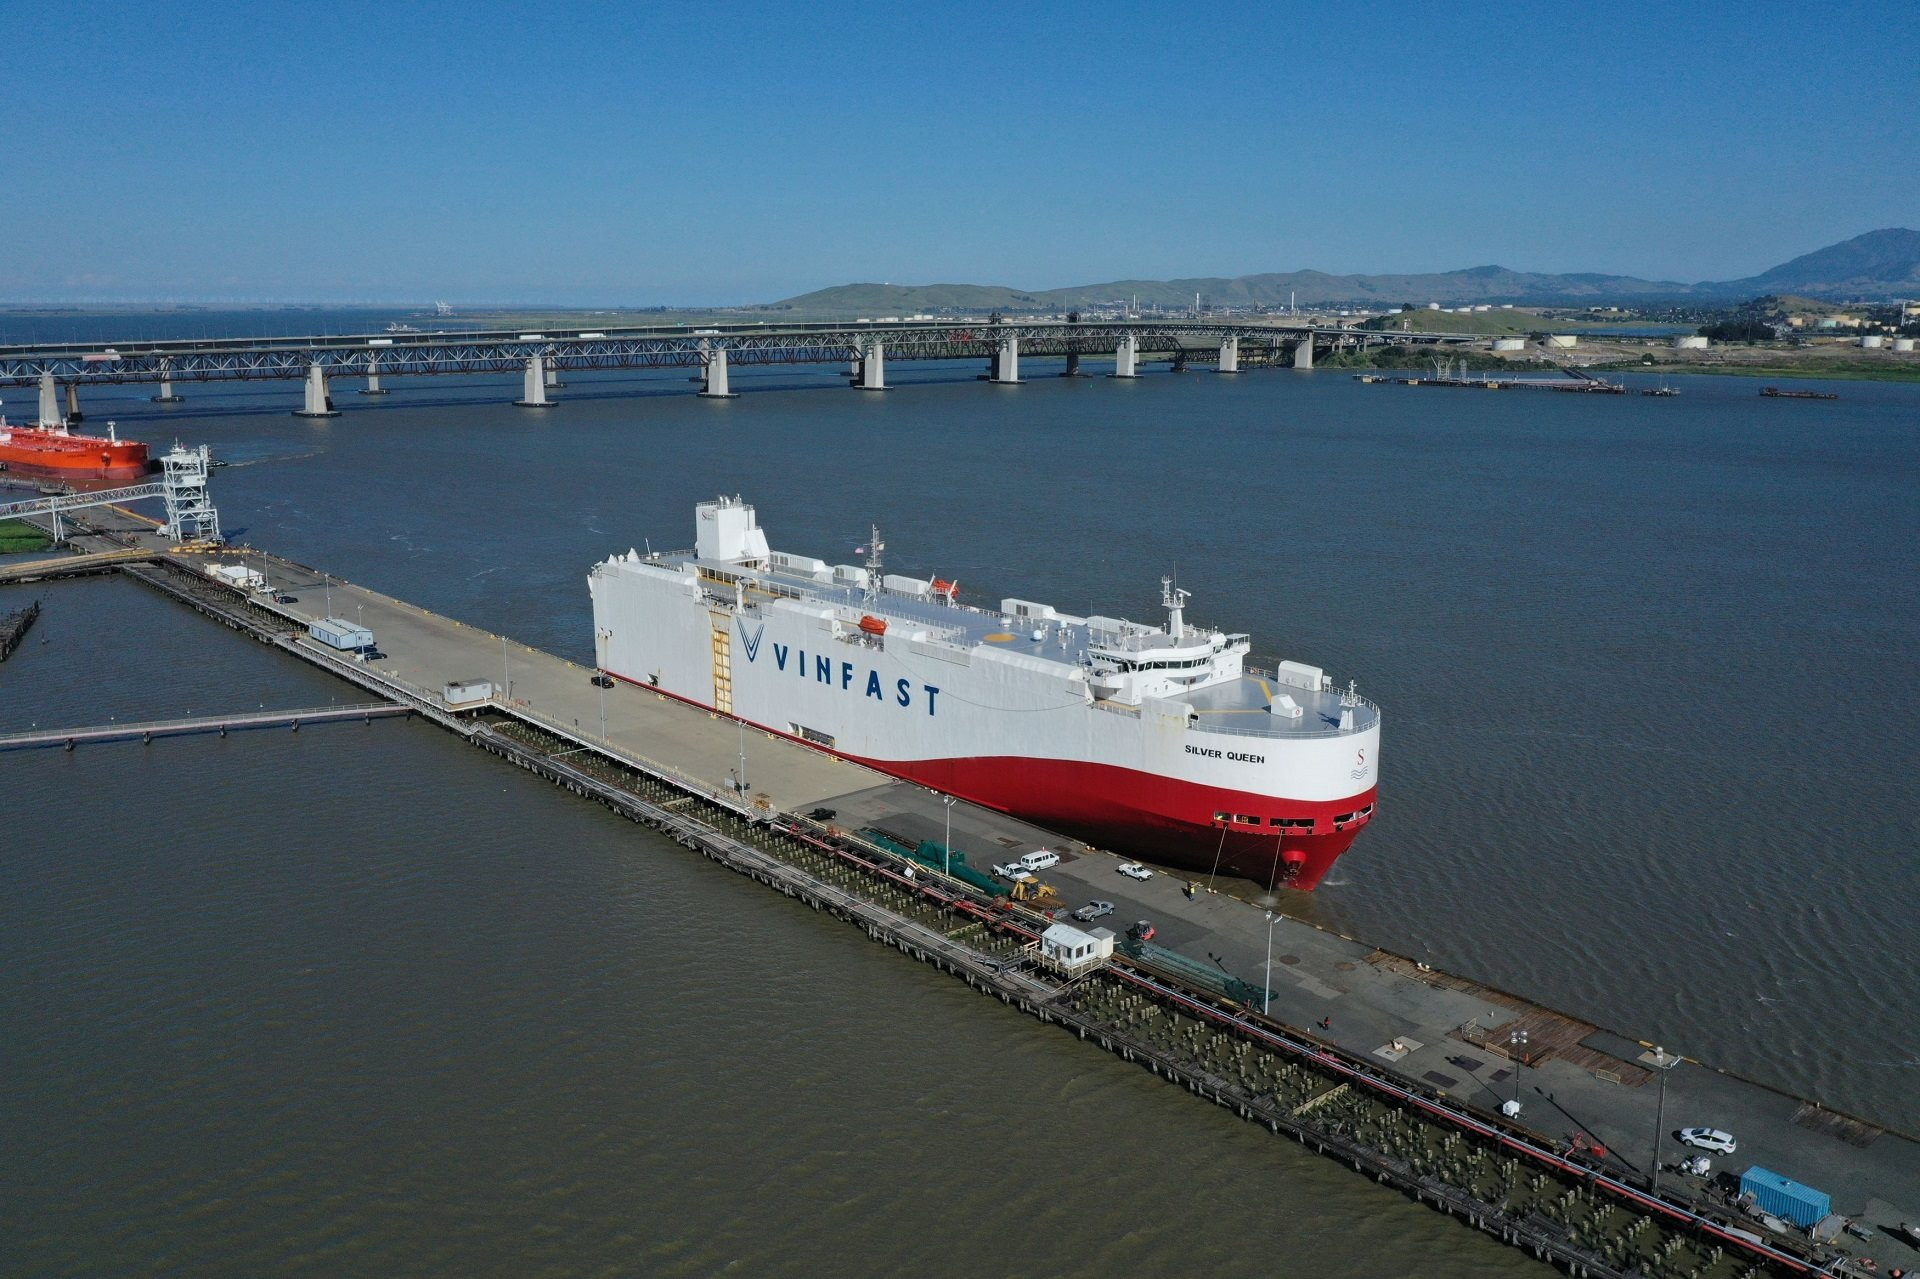 Lô hàng xuất khẩu thứ 2 của VinFast cập cảng Mỹ, chuẩn bị đi tiếp sang Canada - Ảnh 1.